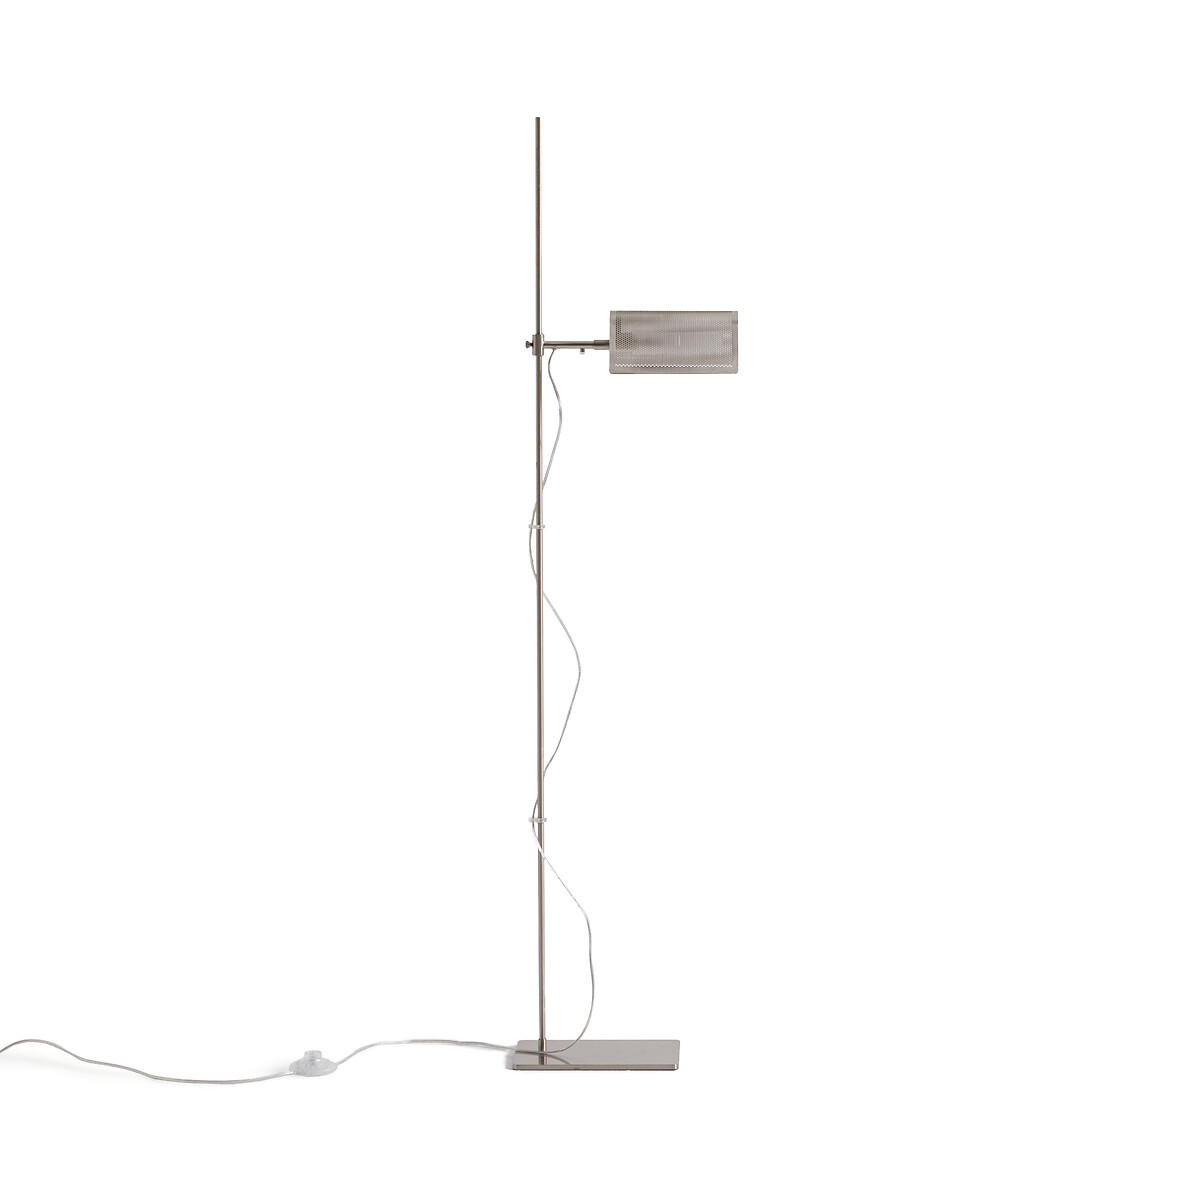 Лампа Для чтения из перфорированного металла с отделкой под глянцевый никель Darja единый размер серый